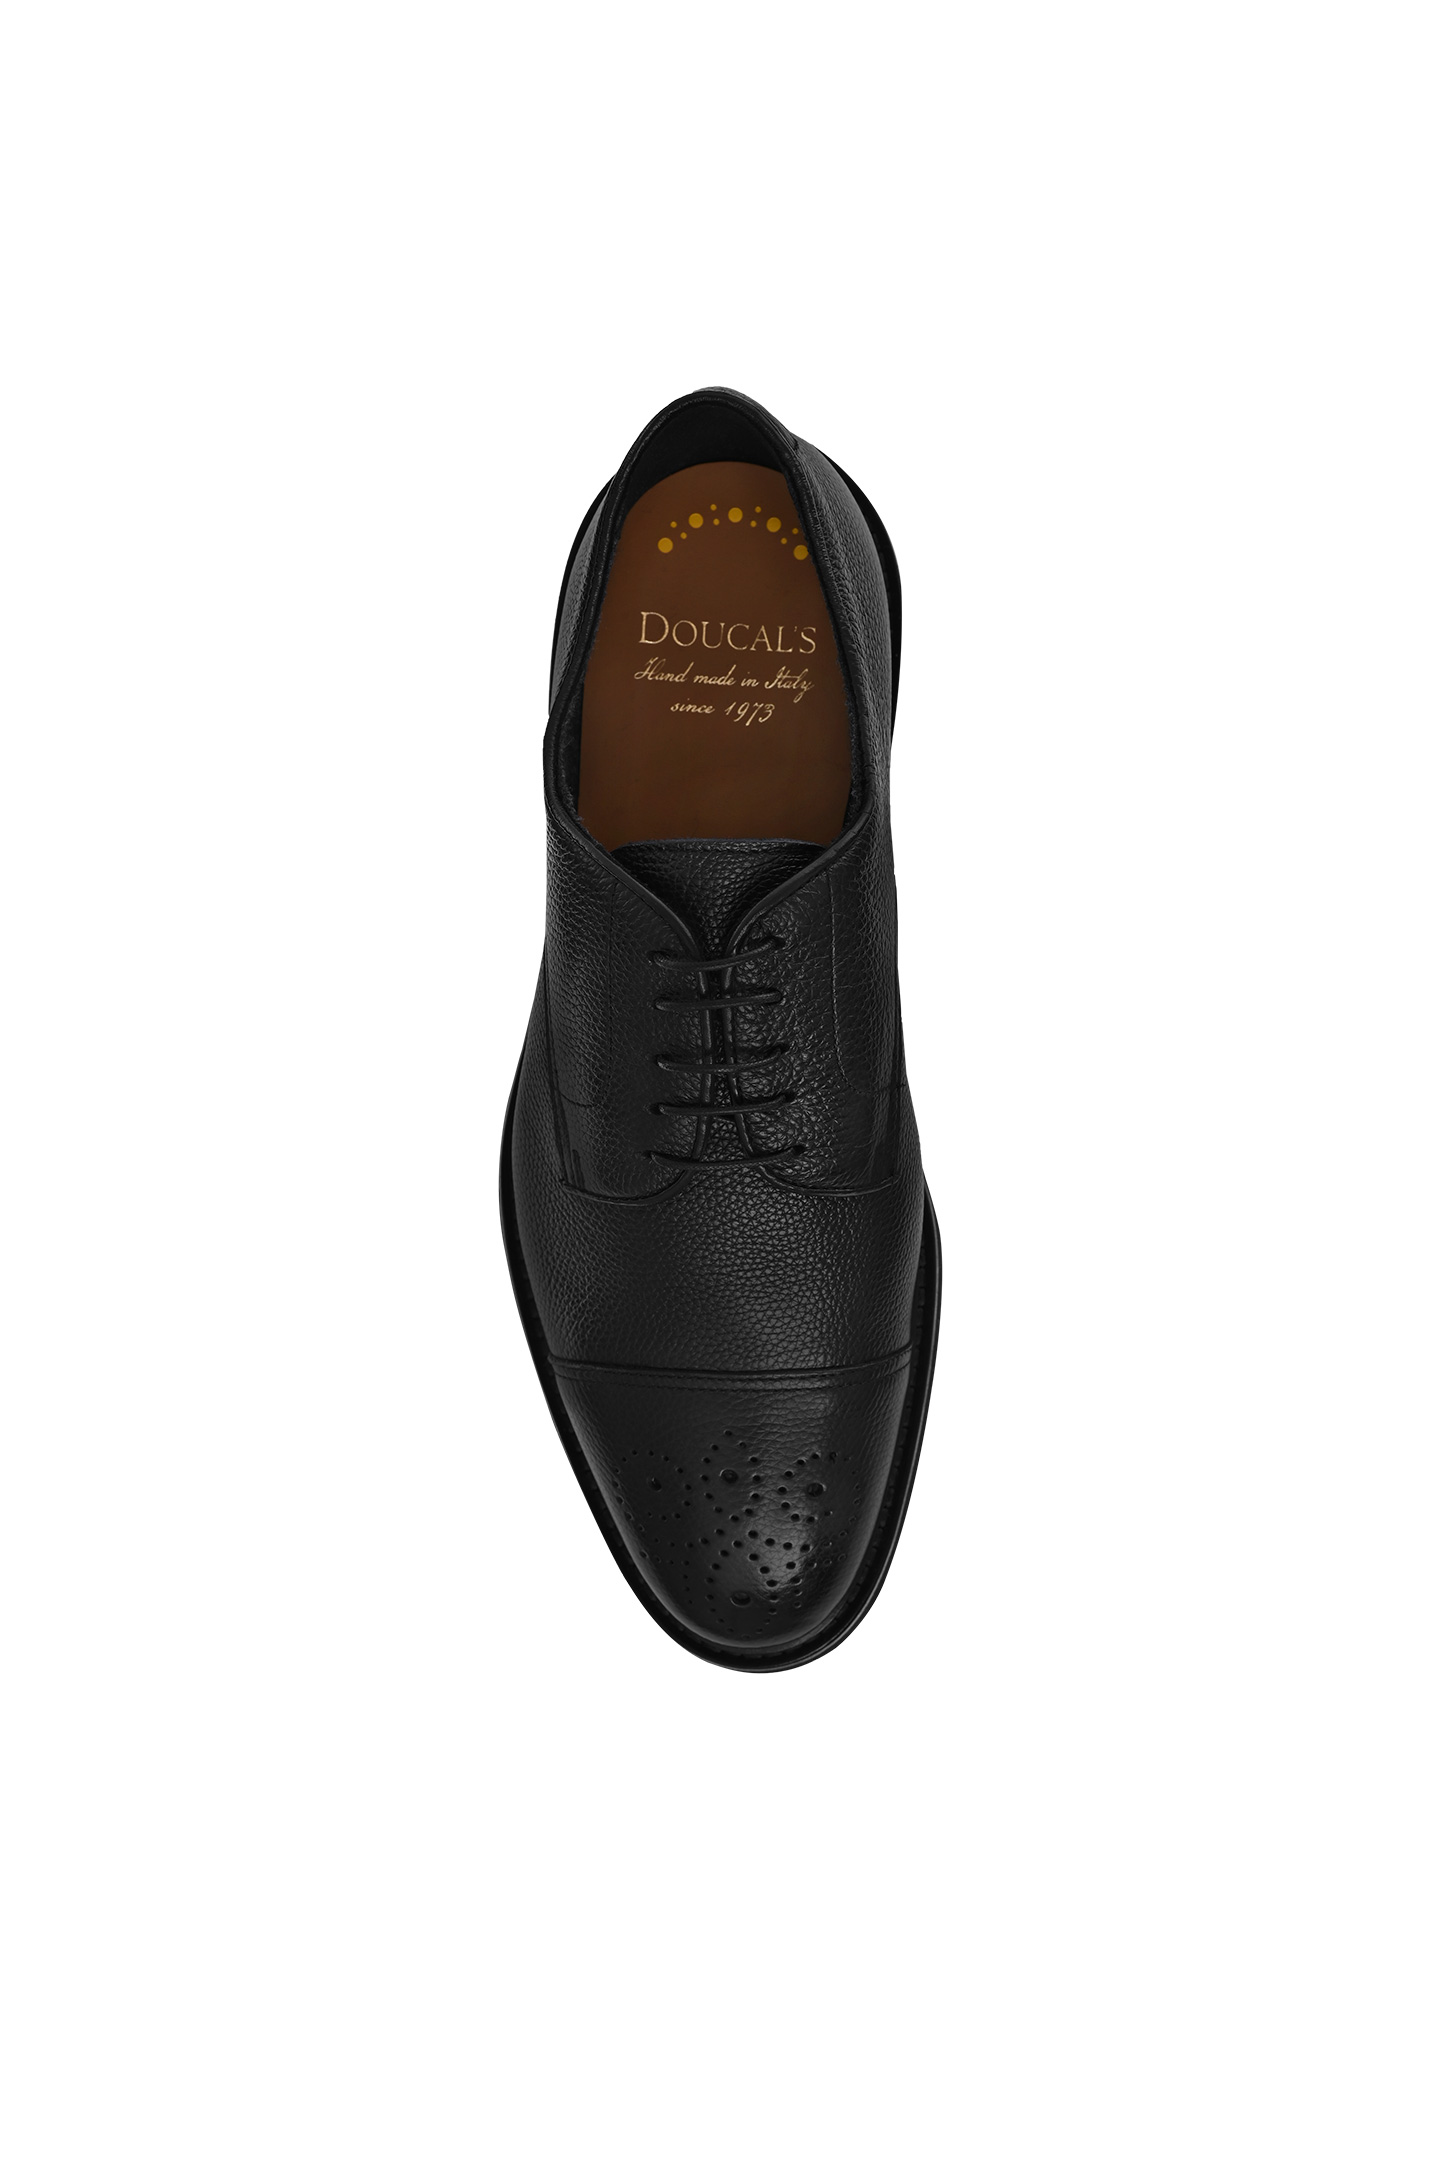 Туфли DOUCAL'S DU2900VEROUT019, цвет: Черный, Мужской